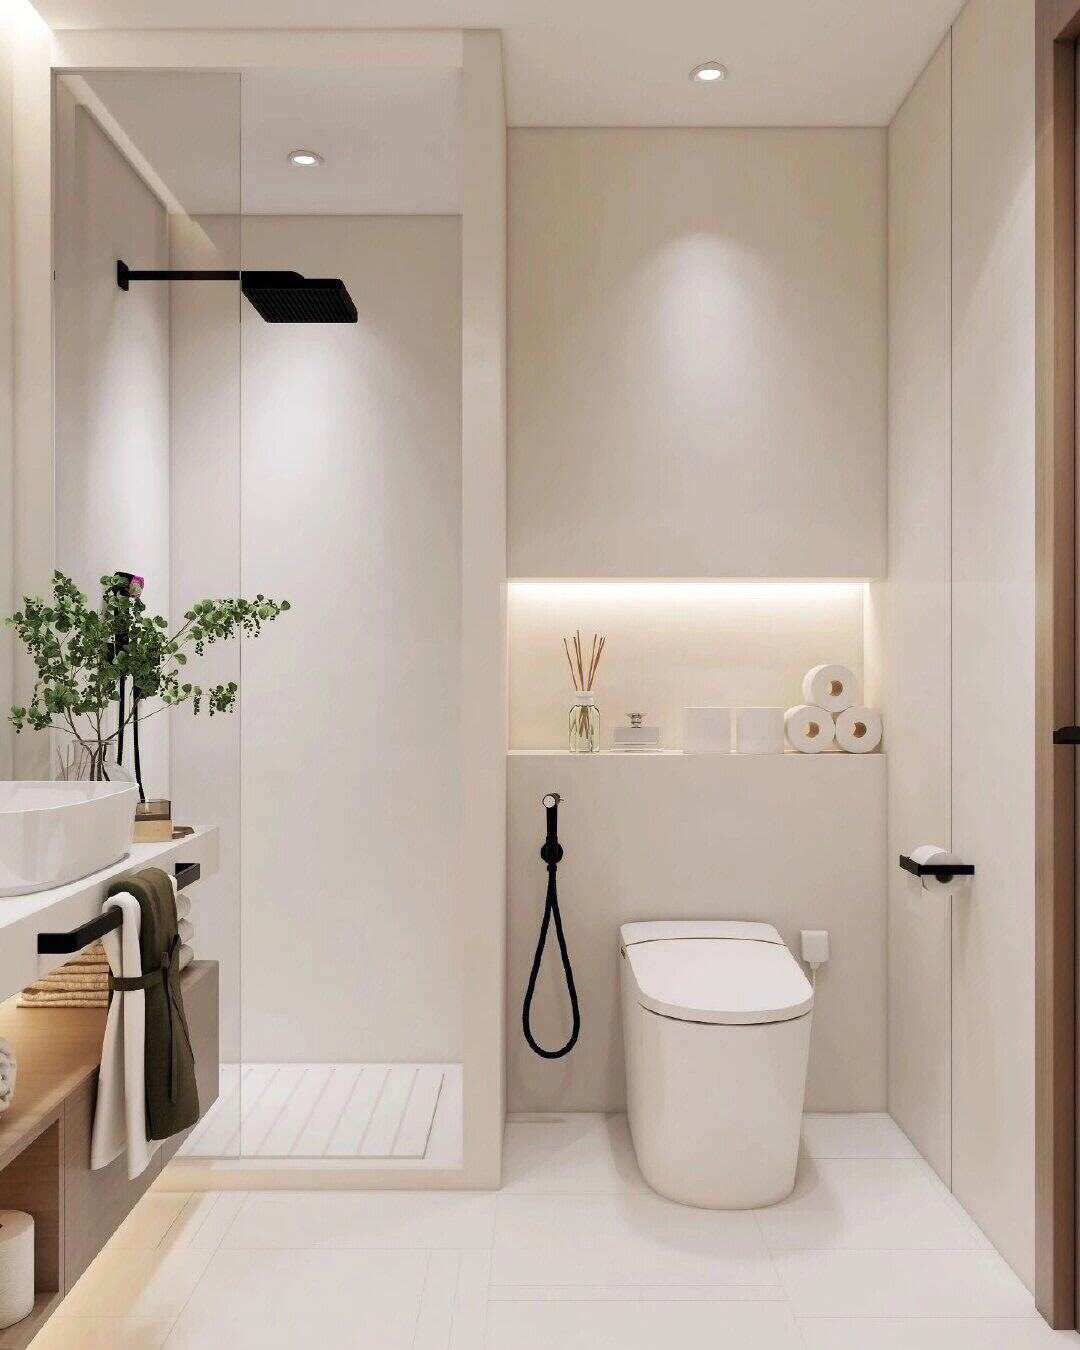 中式家庭装修卫生间设计方案 不同面积的卫生间装修布局